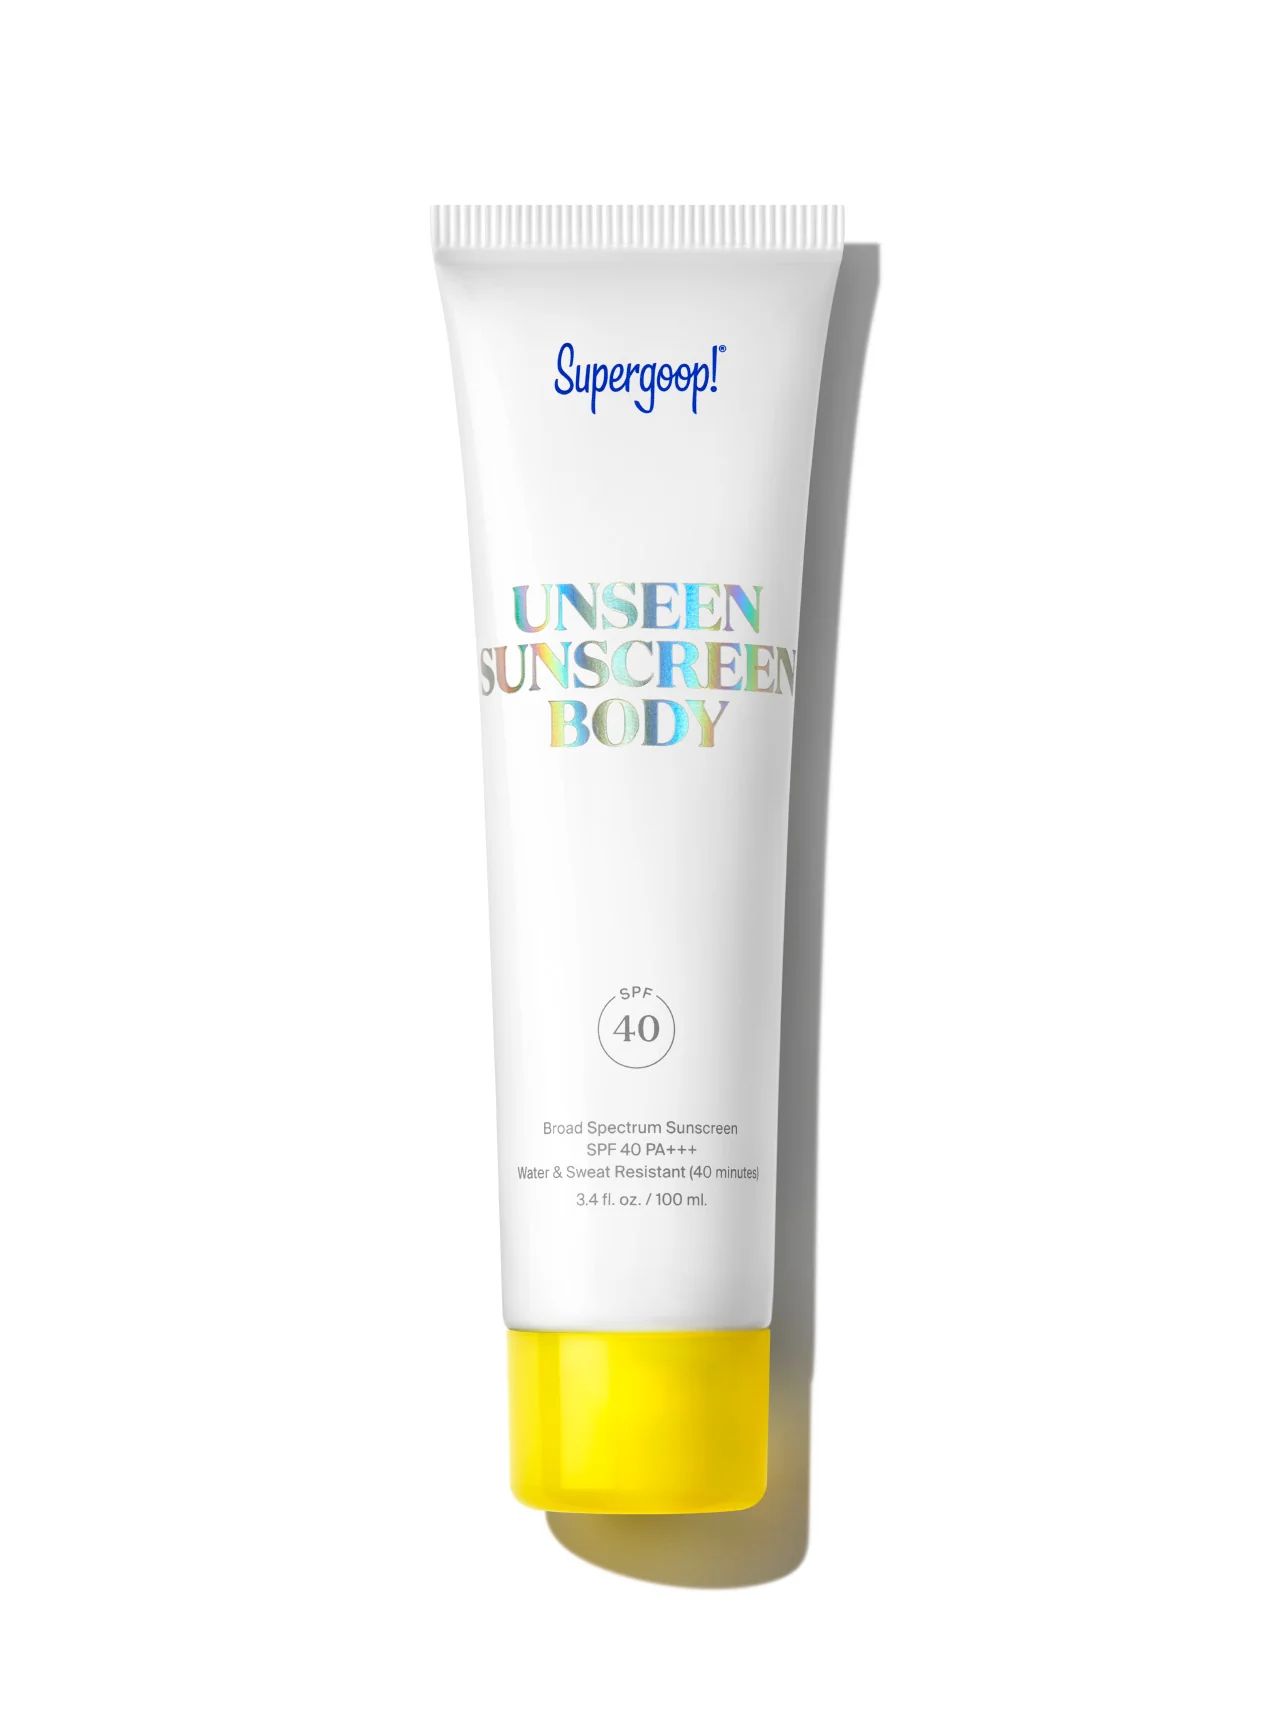 Unseen Sunscreen Body SPF 40 | Supergoop